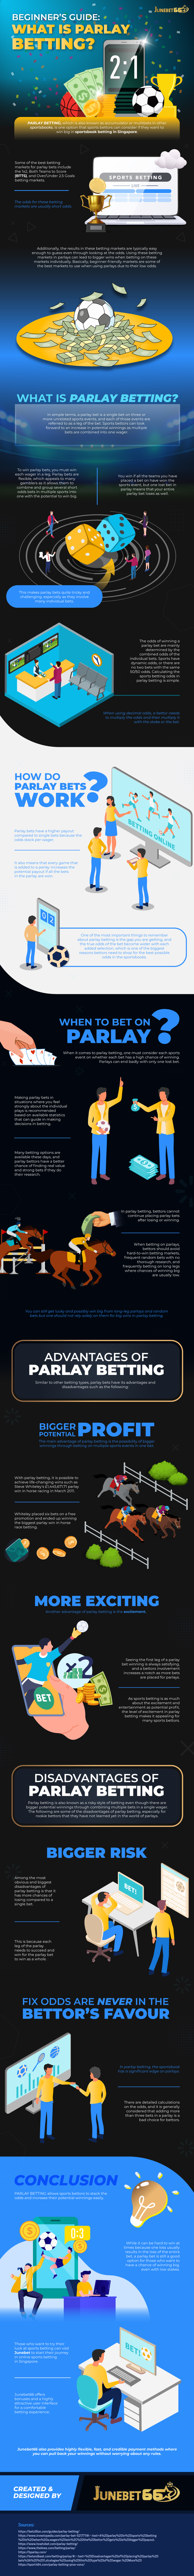 Parlay Betting Casino